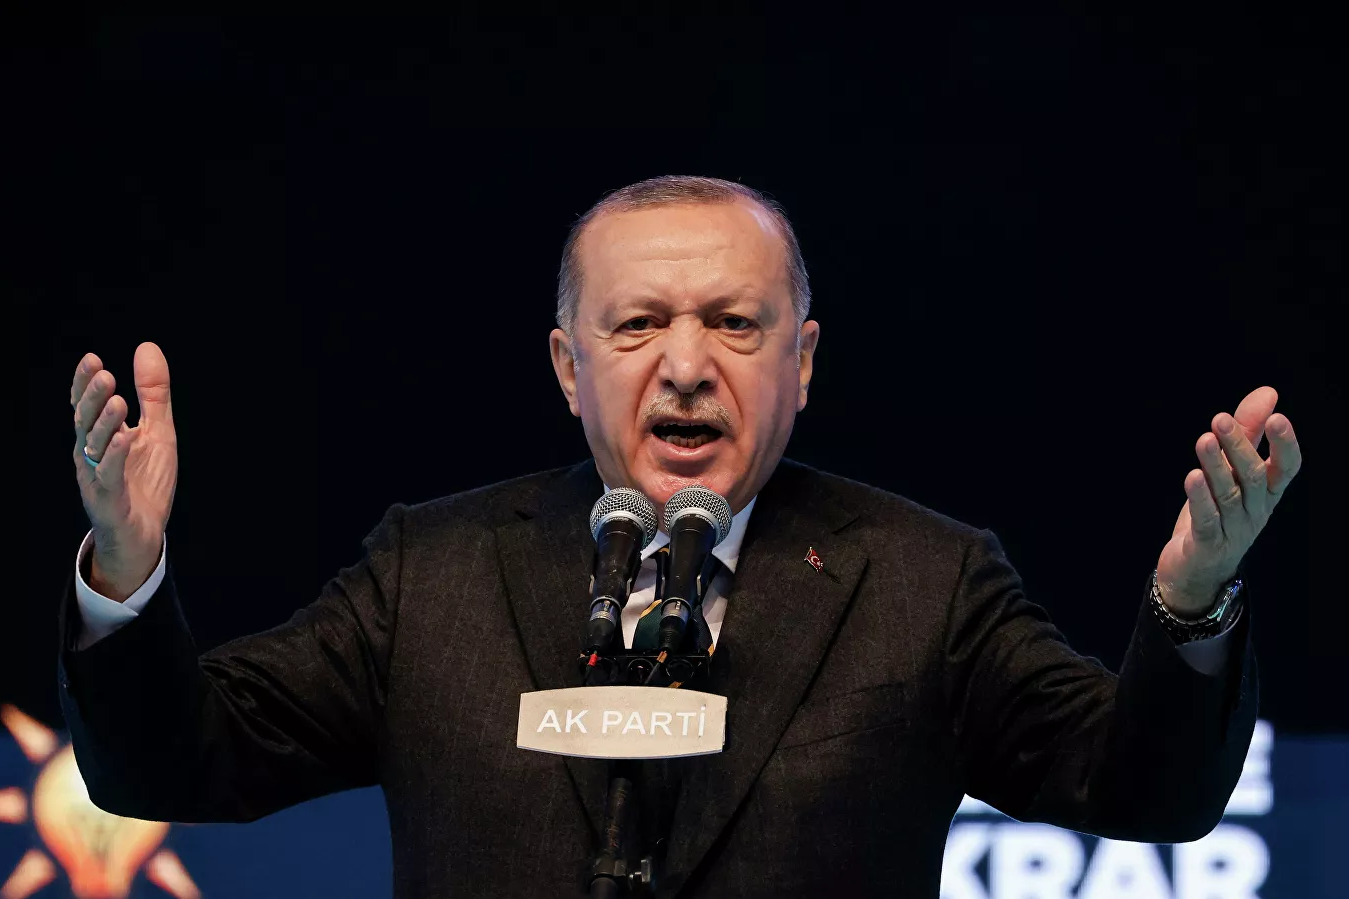 Турция поддержит палестинцев Иерусалима также, как поддержала Азербайджан в Карабахе – Эрдоган